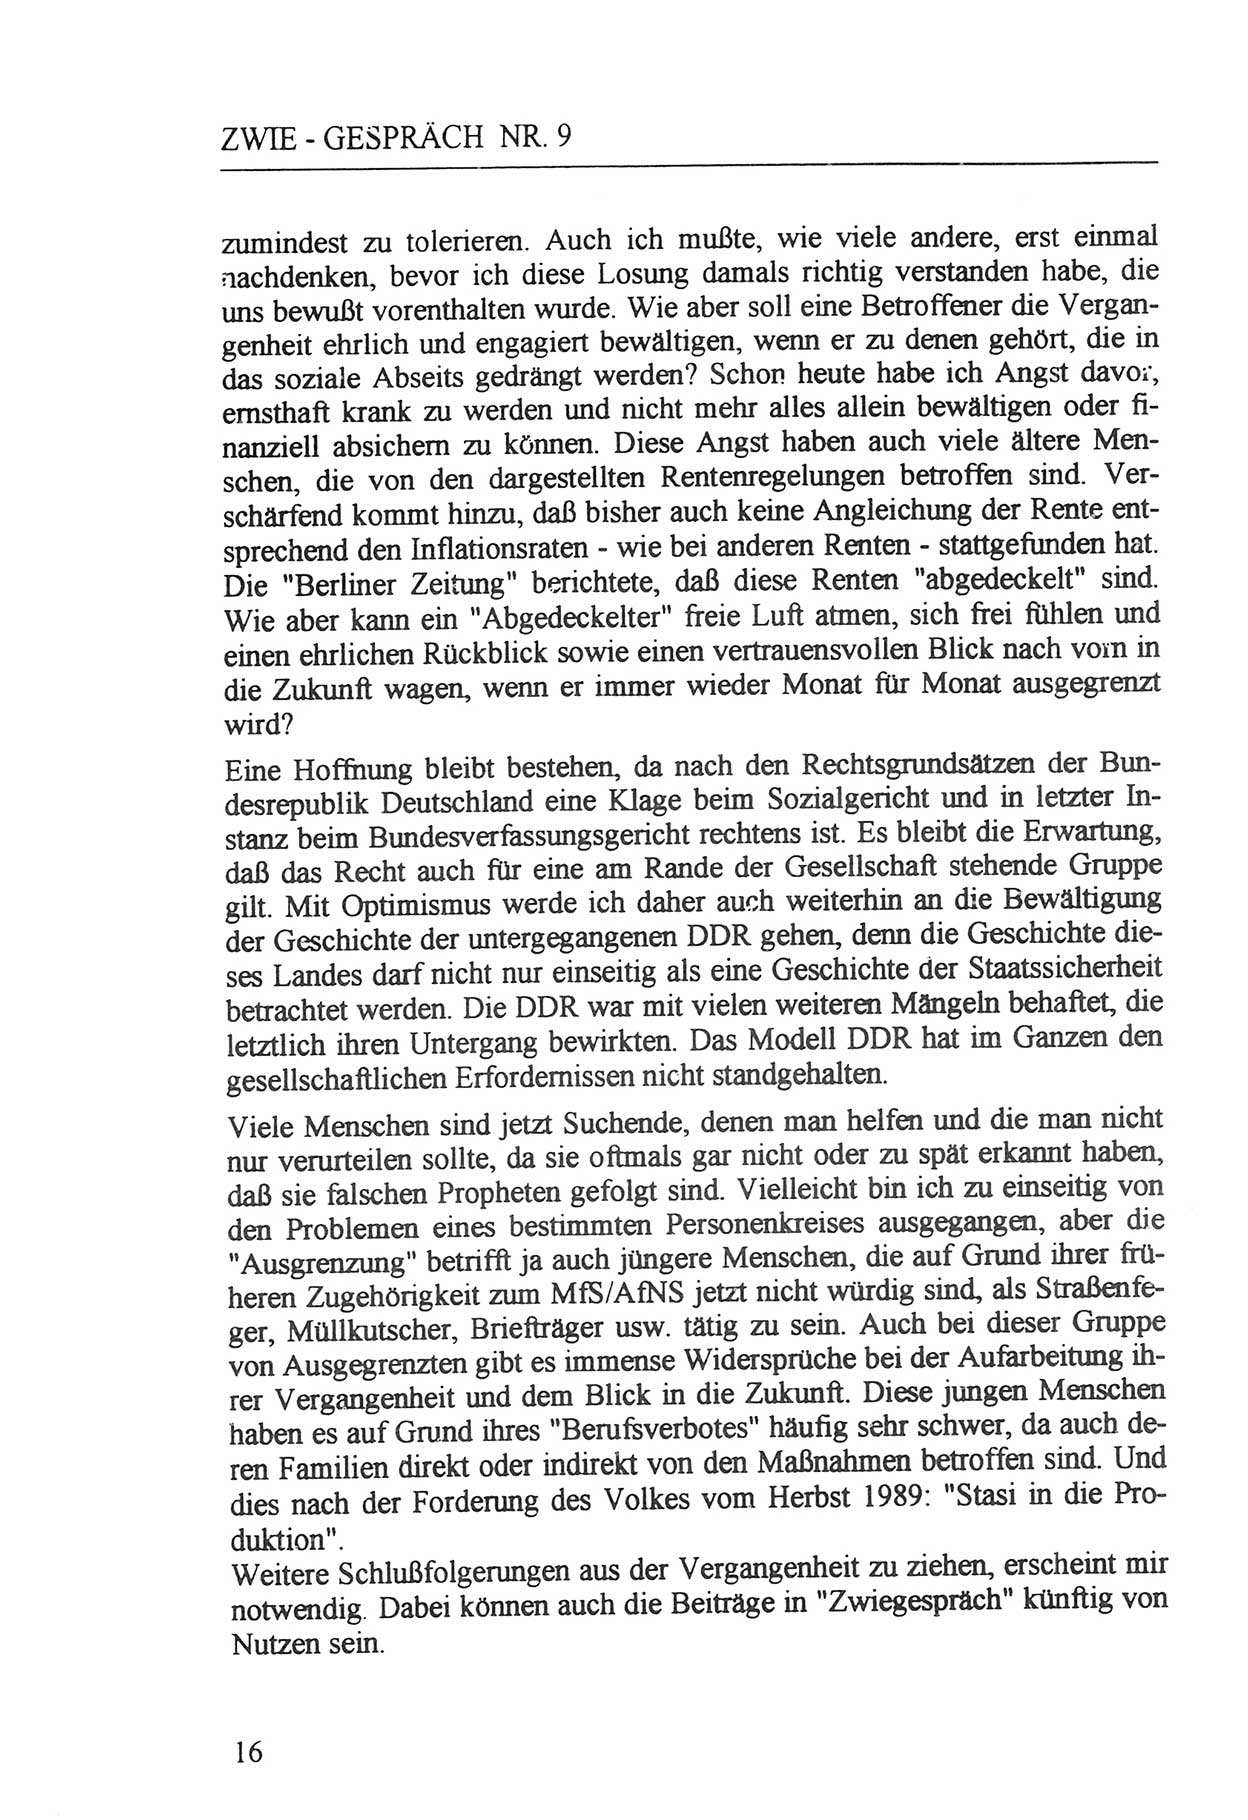 Zwie-Gespräch, Beiträge zur Aufarbeitung der Staatssicherheits-Vergangenheit [Deutsche Demokratische Republik (DDR)], Ausgabe Nr. 9, Berlin 1992, Seite 16 (Zwie-Gespr. Ausg. 9 1992, S. 16)